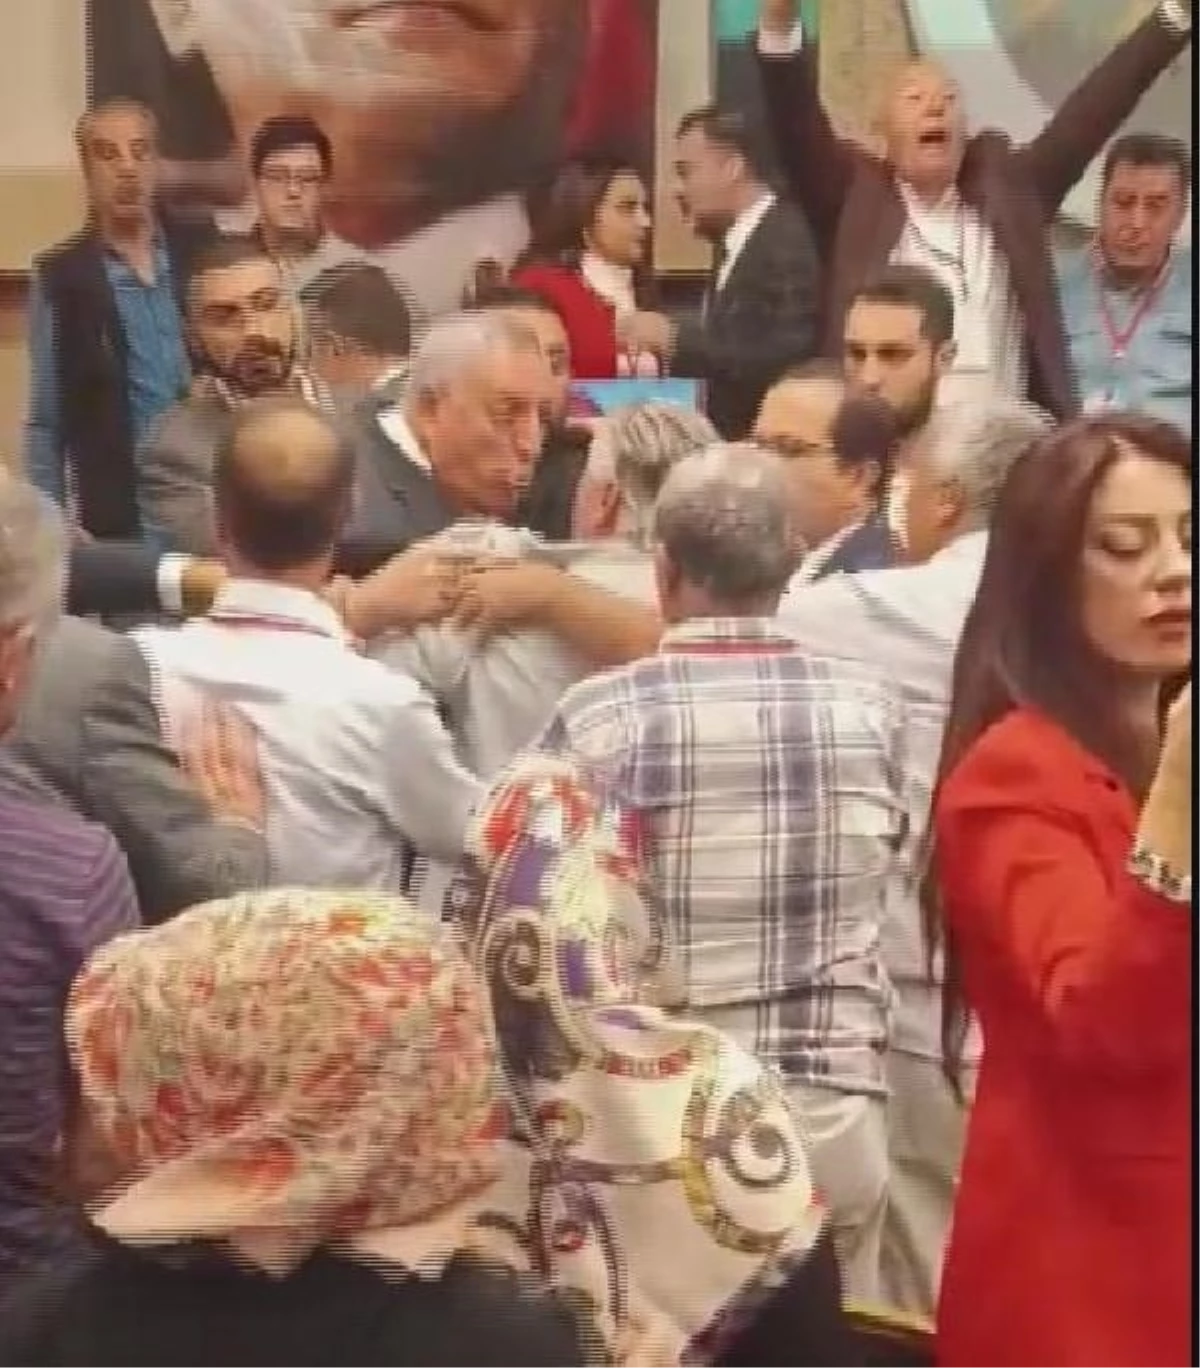 CHP Konya Vilayet Lideri ile Belediye Lideri Ortasında Gerginlik